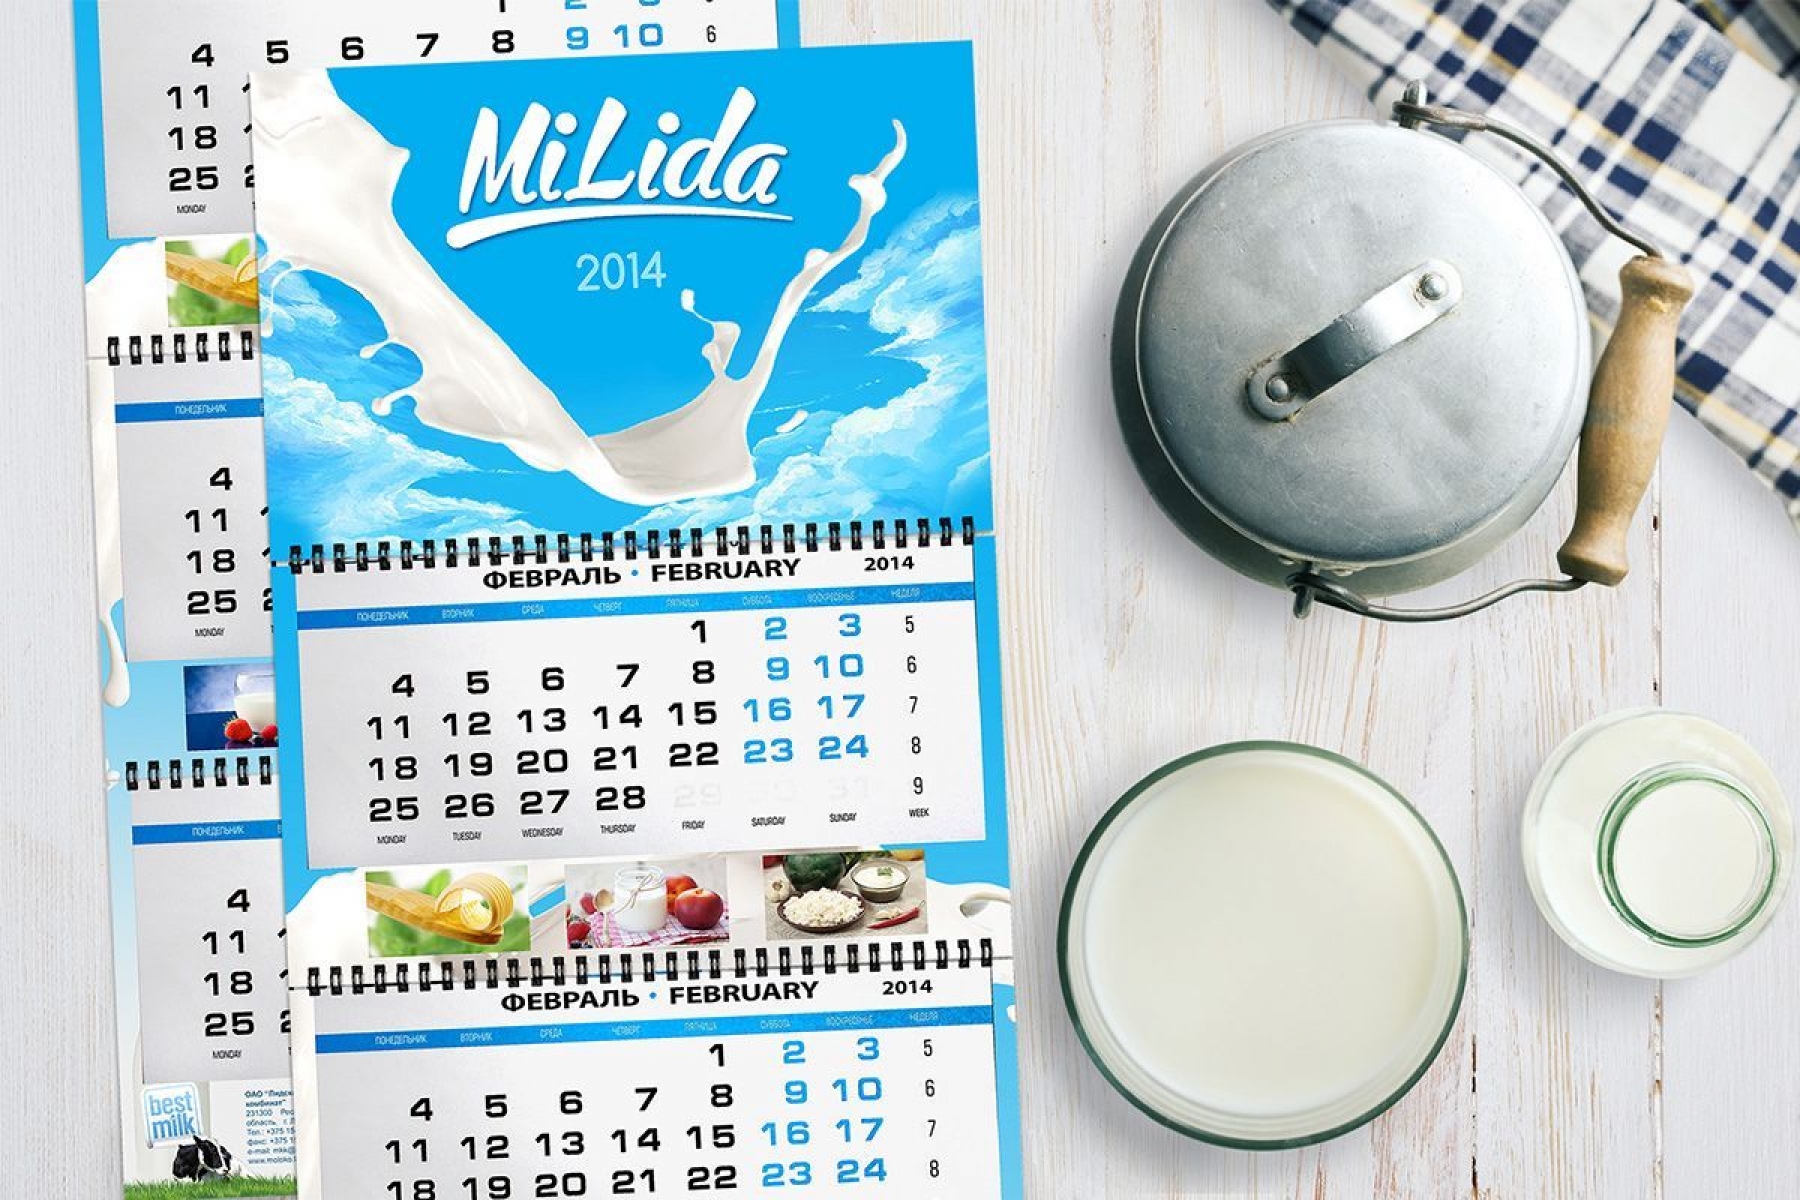 Дизайн-концепция календарей на 2014 г. для "Лидского МКК"